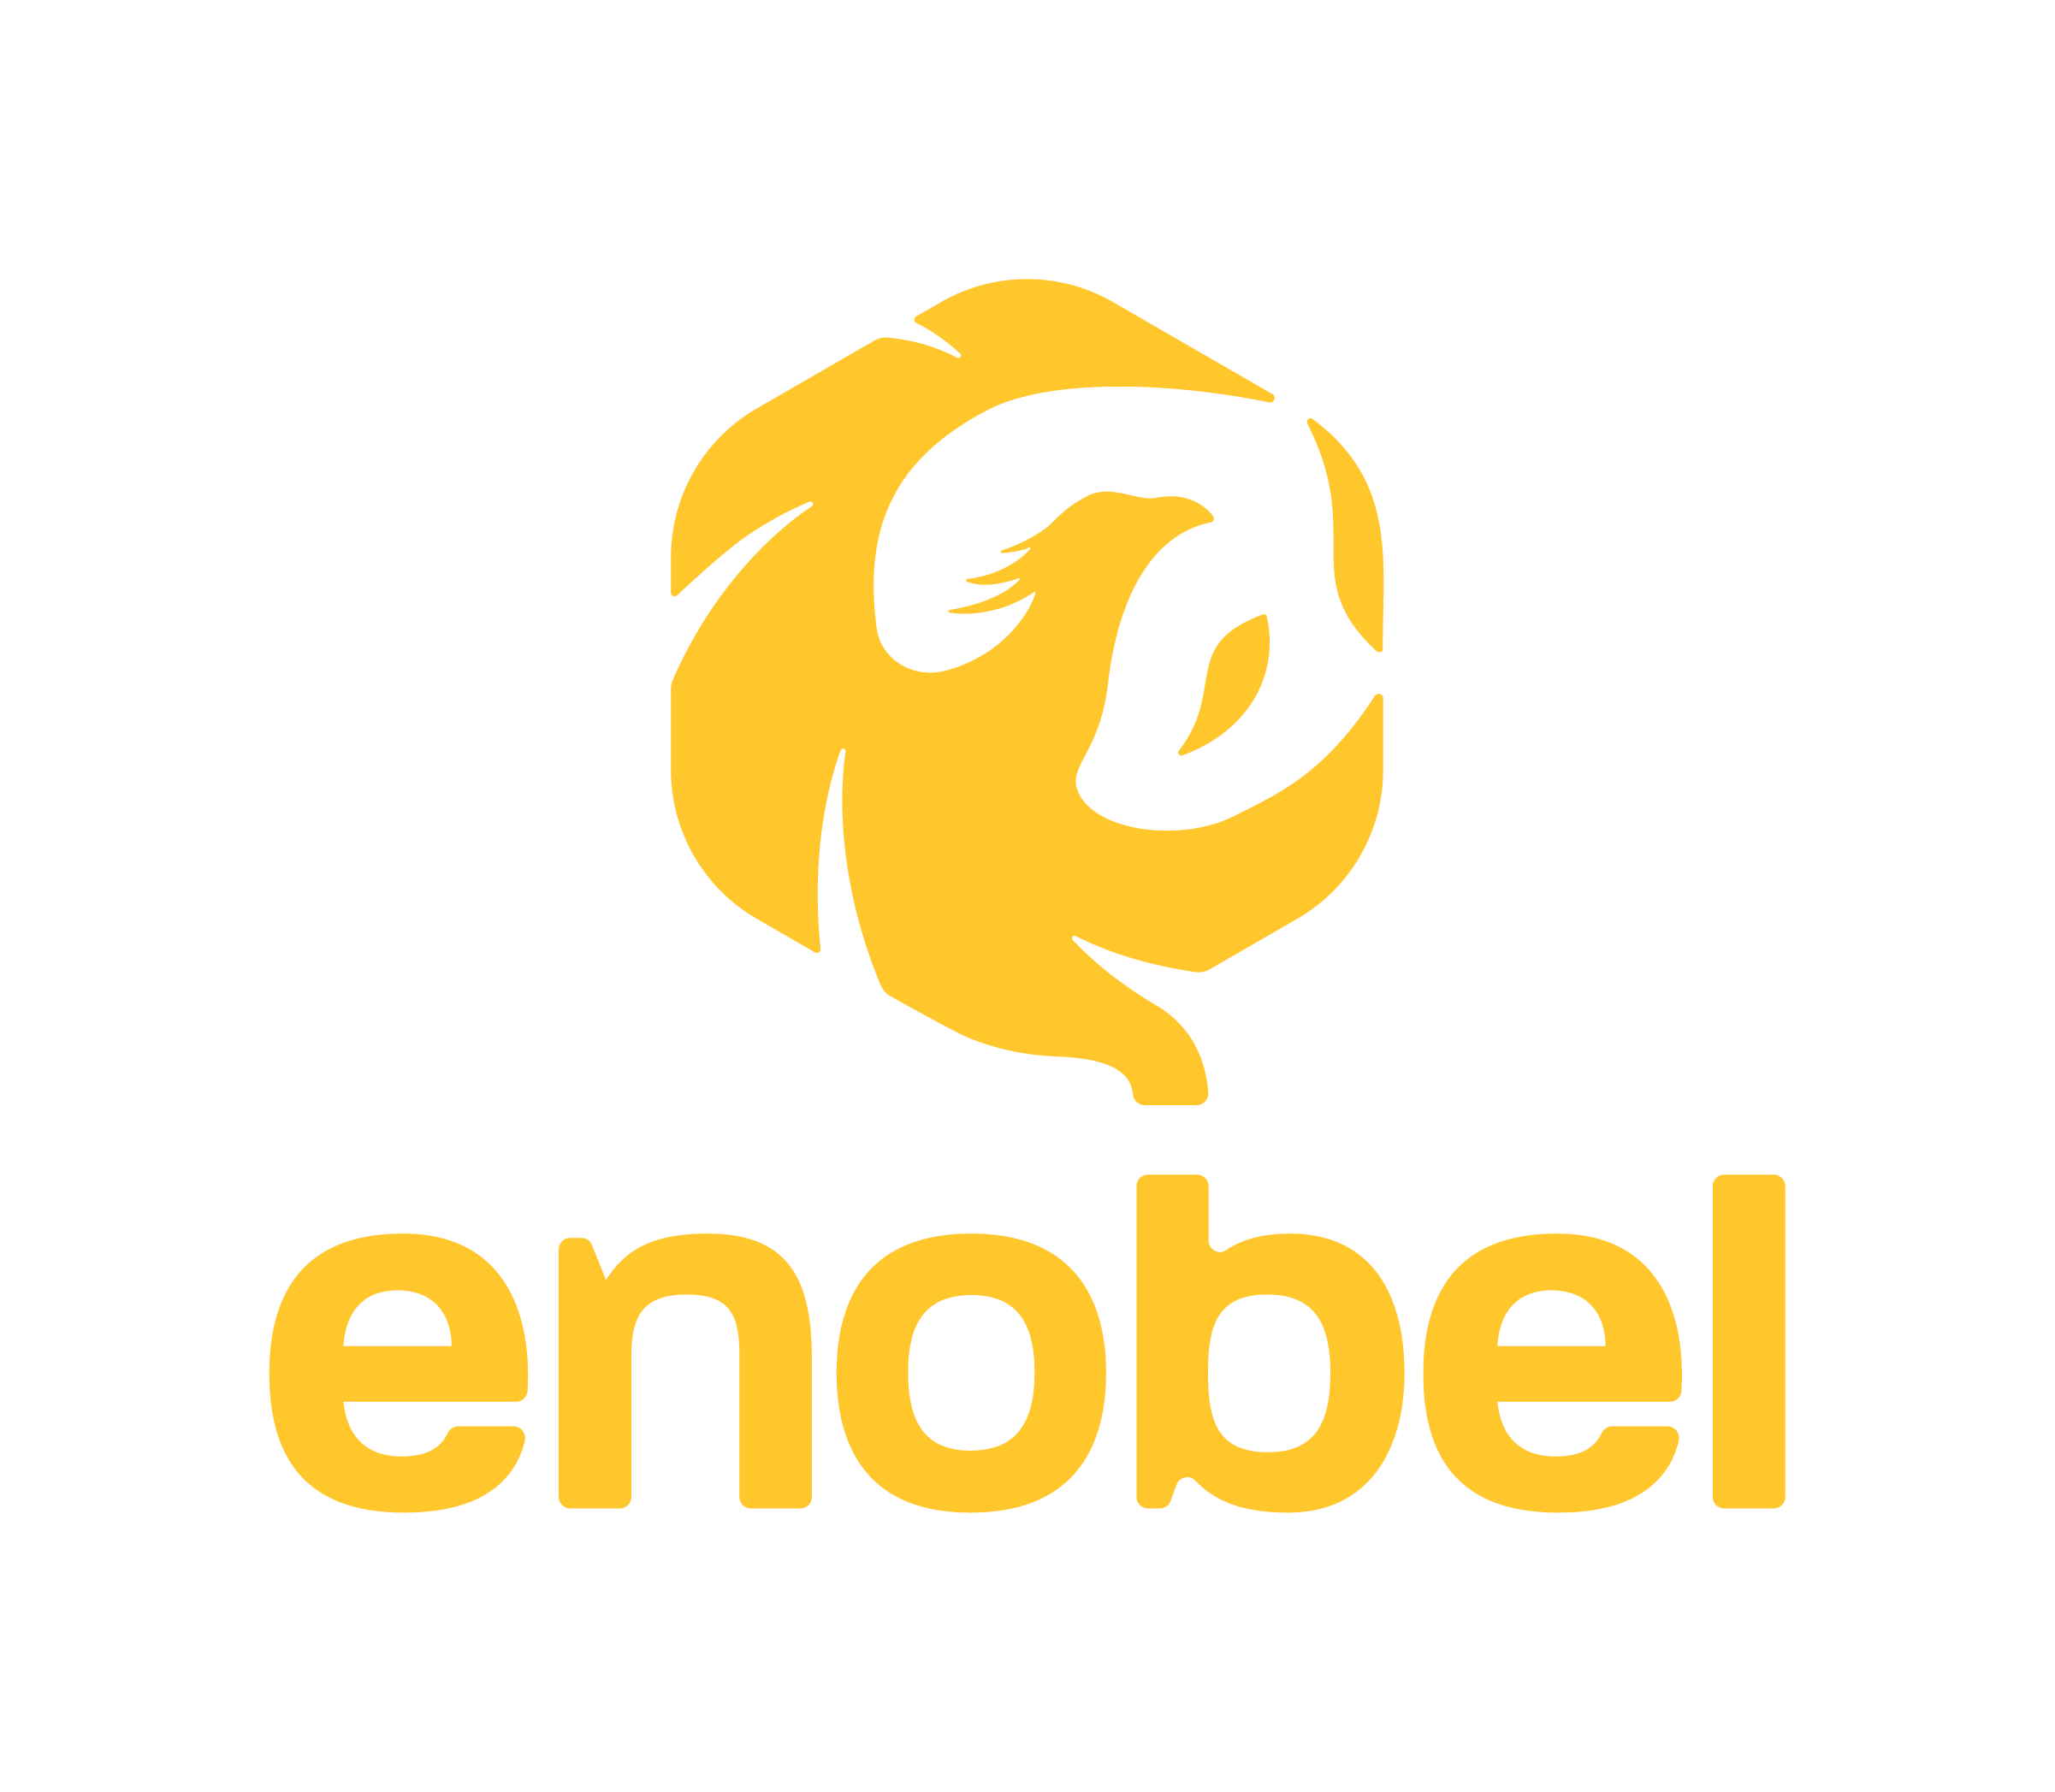 eNobel